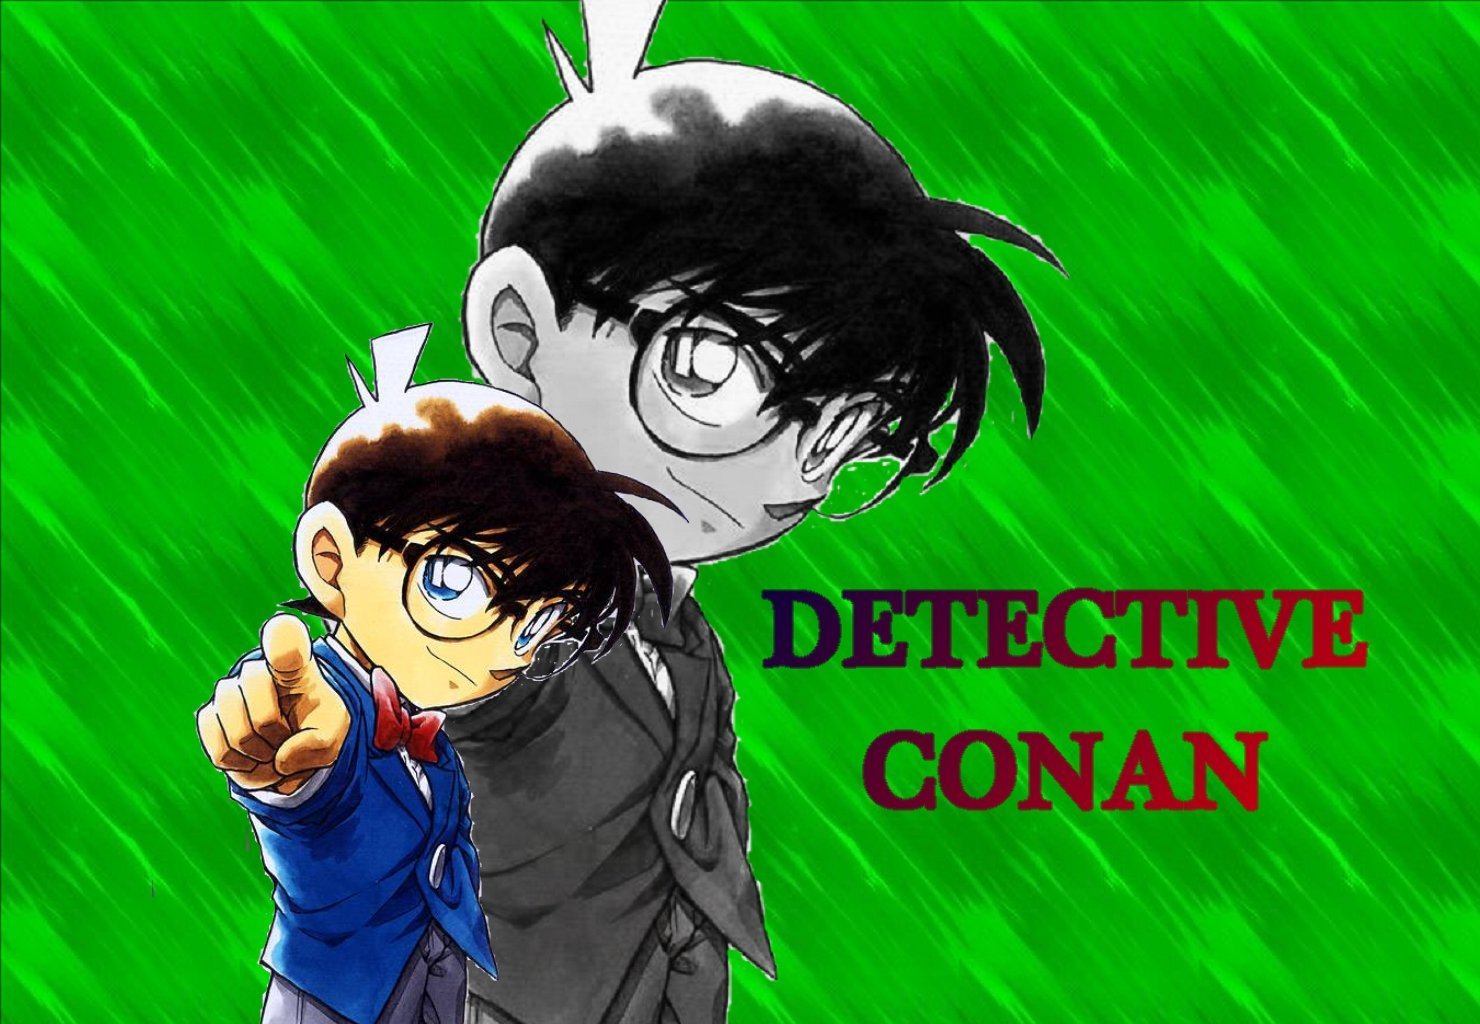 Detective Conan - Wallpaper Gallery